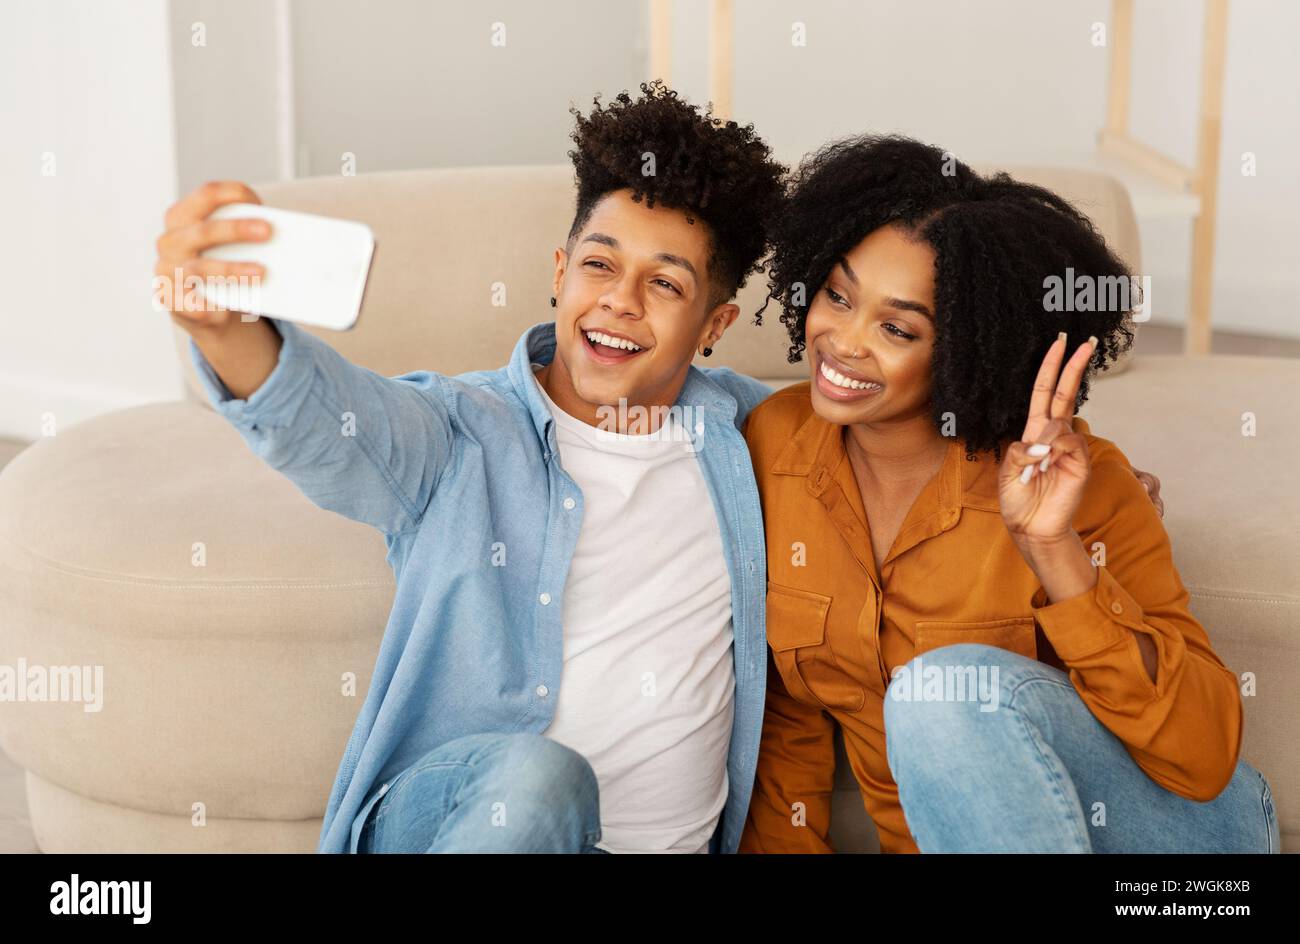 Una giovane coppia allegra cattura un momento di gioia con un selfie, l'uomo con una camicia in denim che fa brillare un sorriso Foto Stock